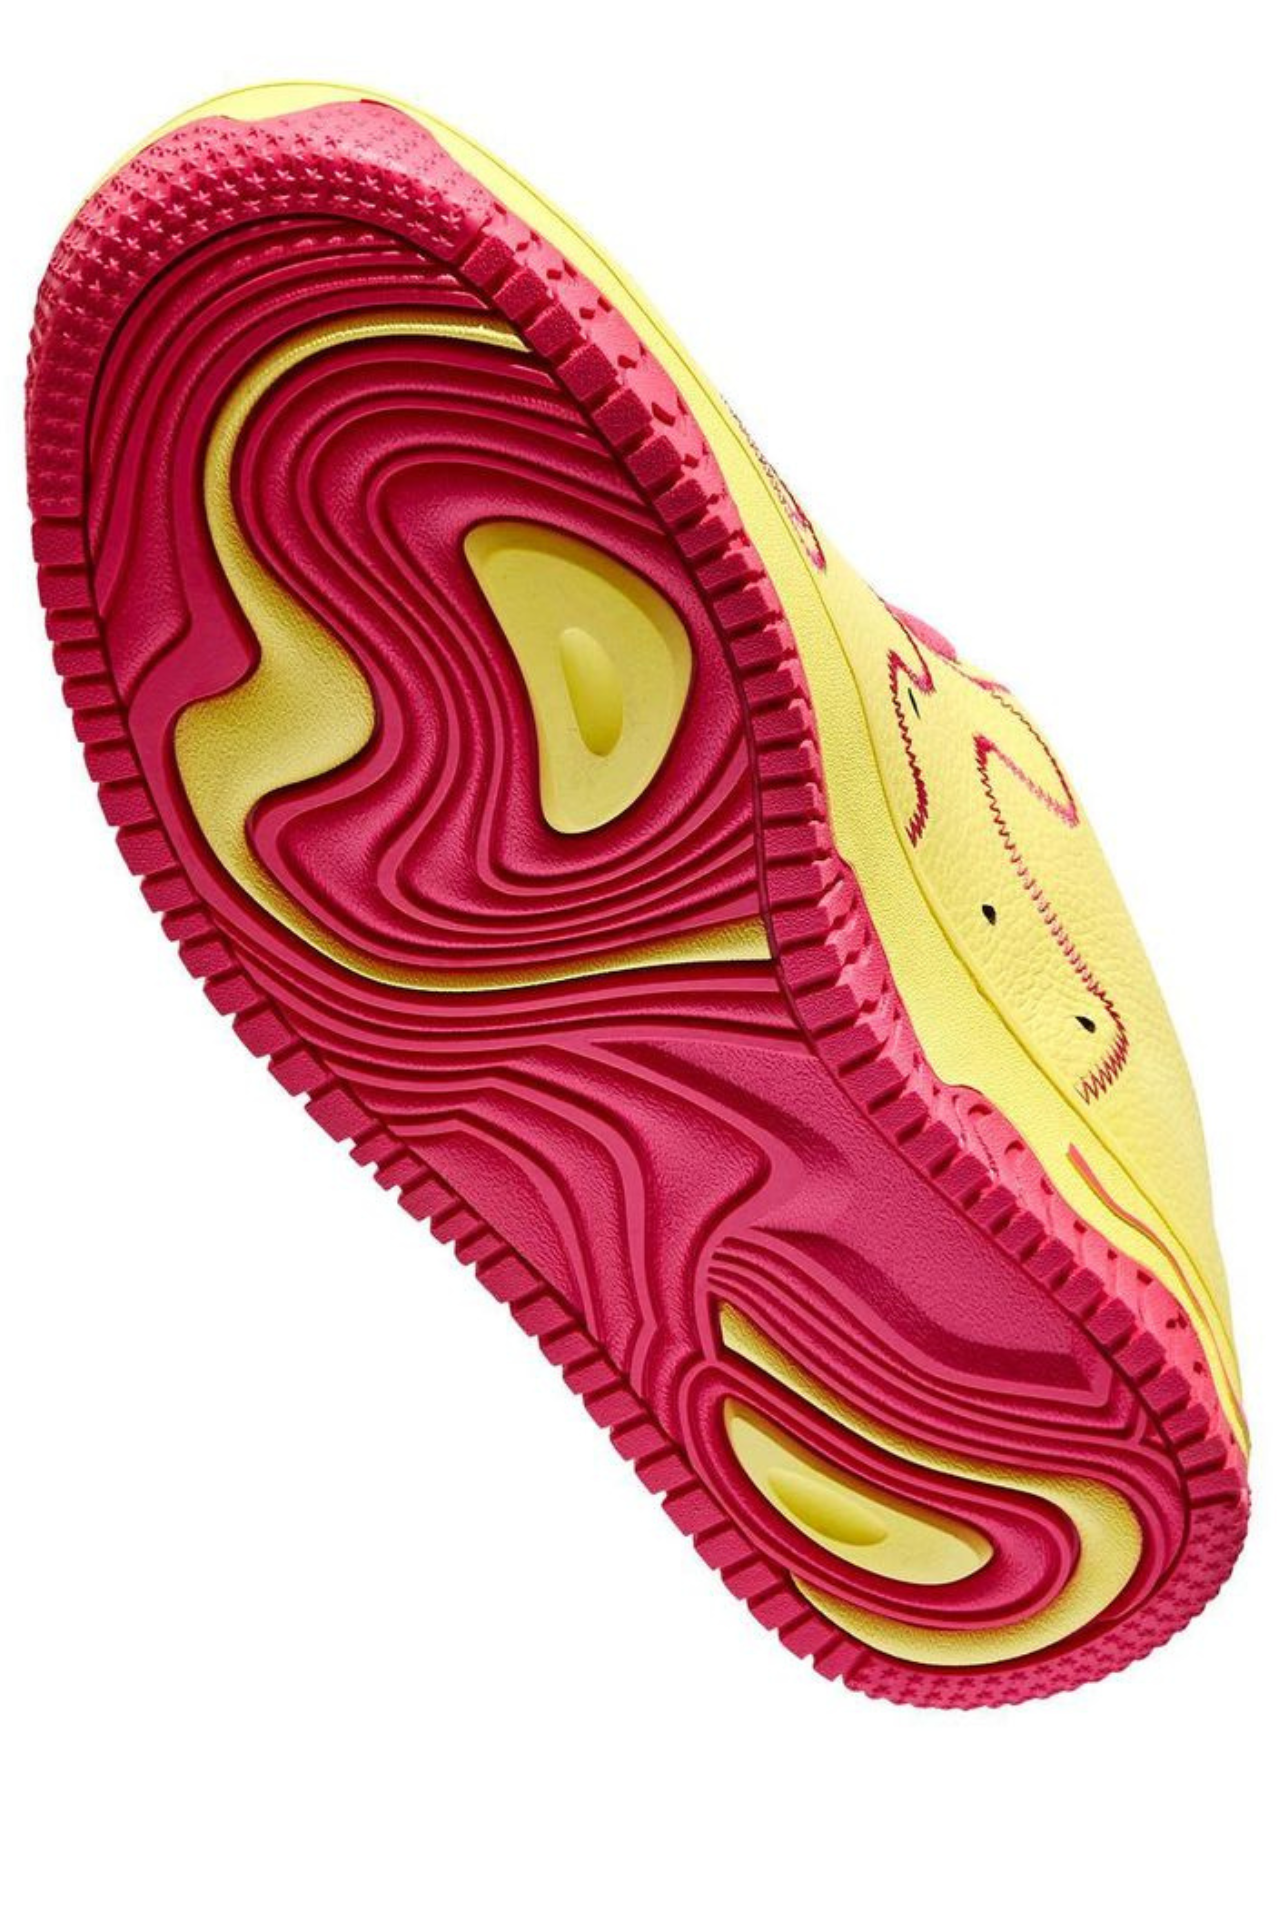 MSCHF Super Normal 2 Raspberry Lemonade: El nuevo calzado de la popular marca